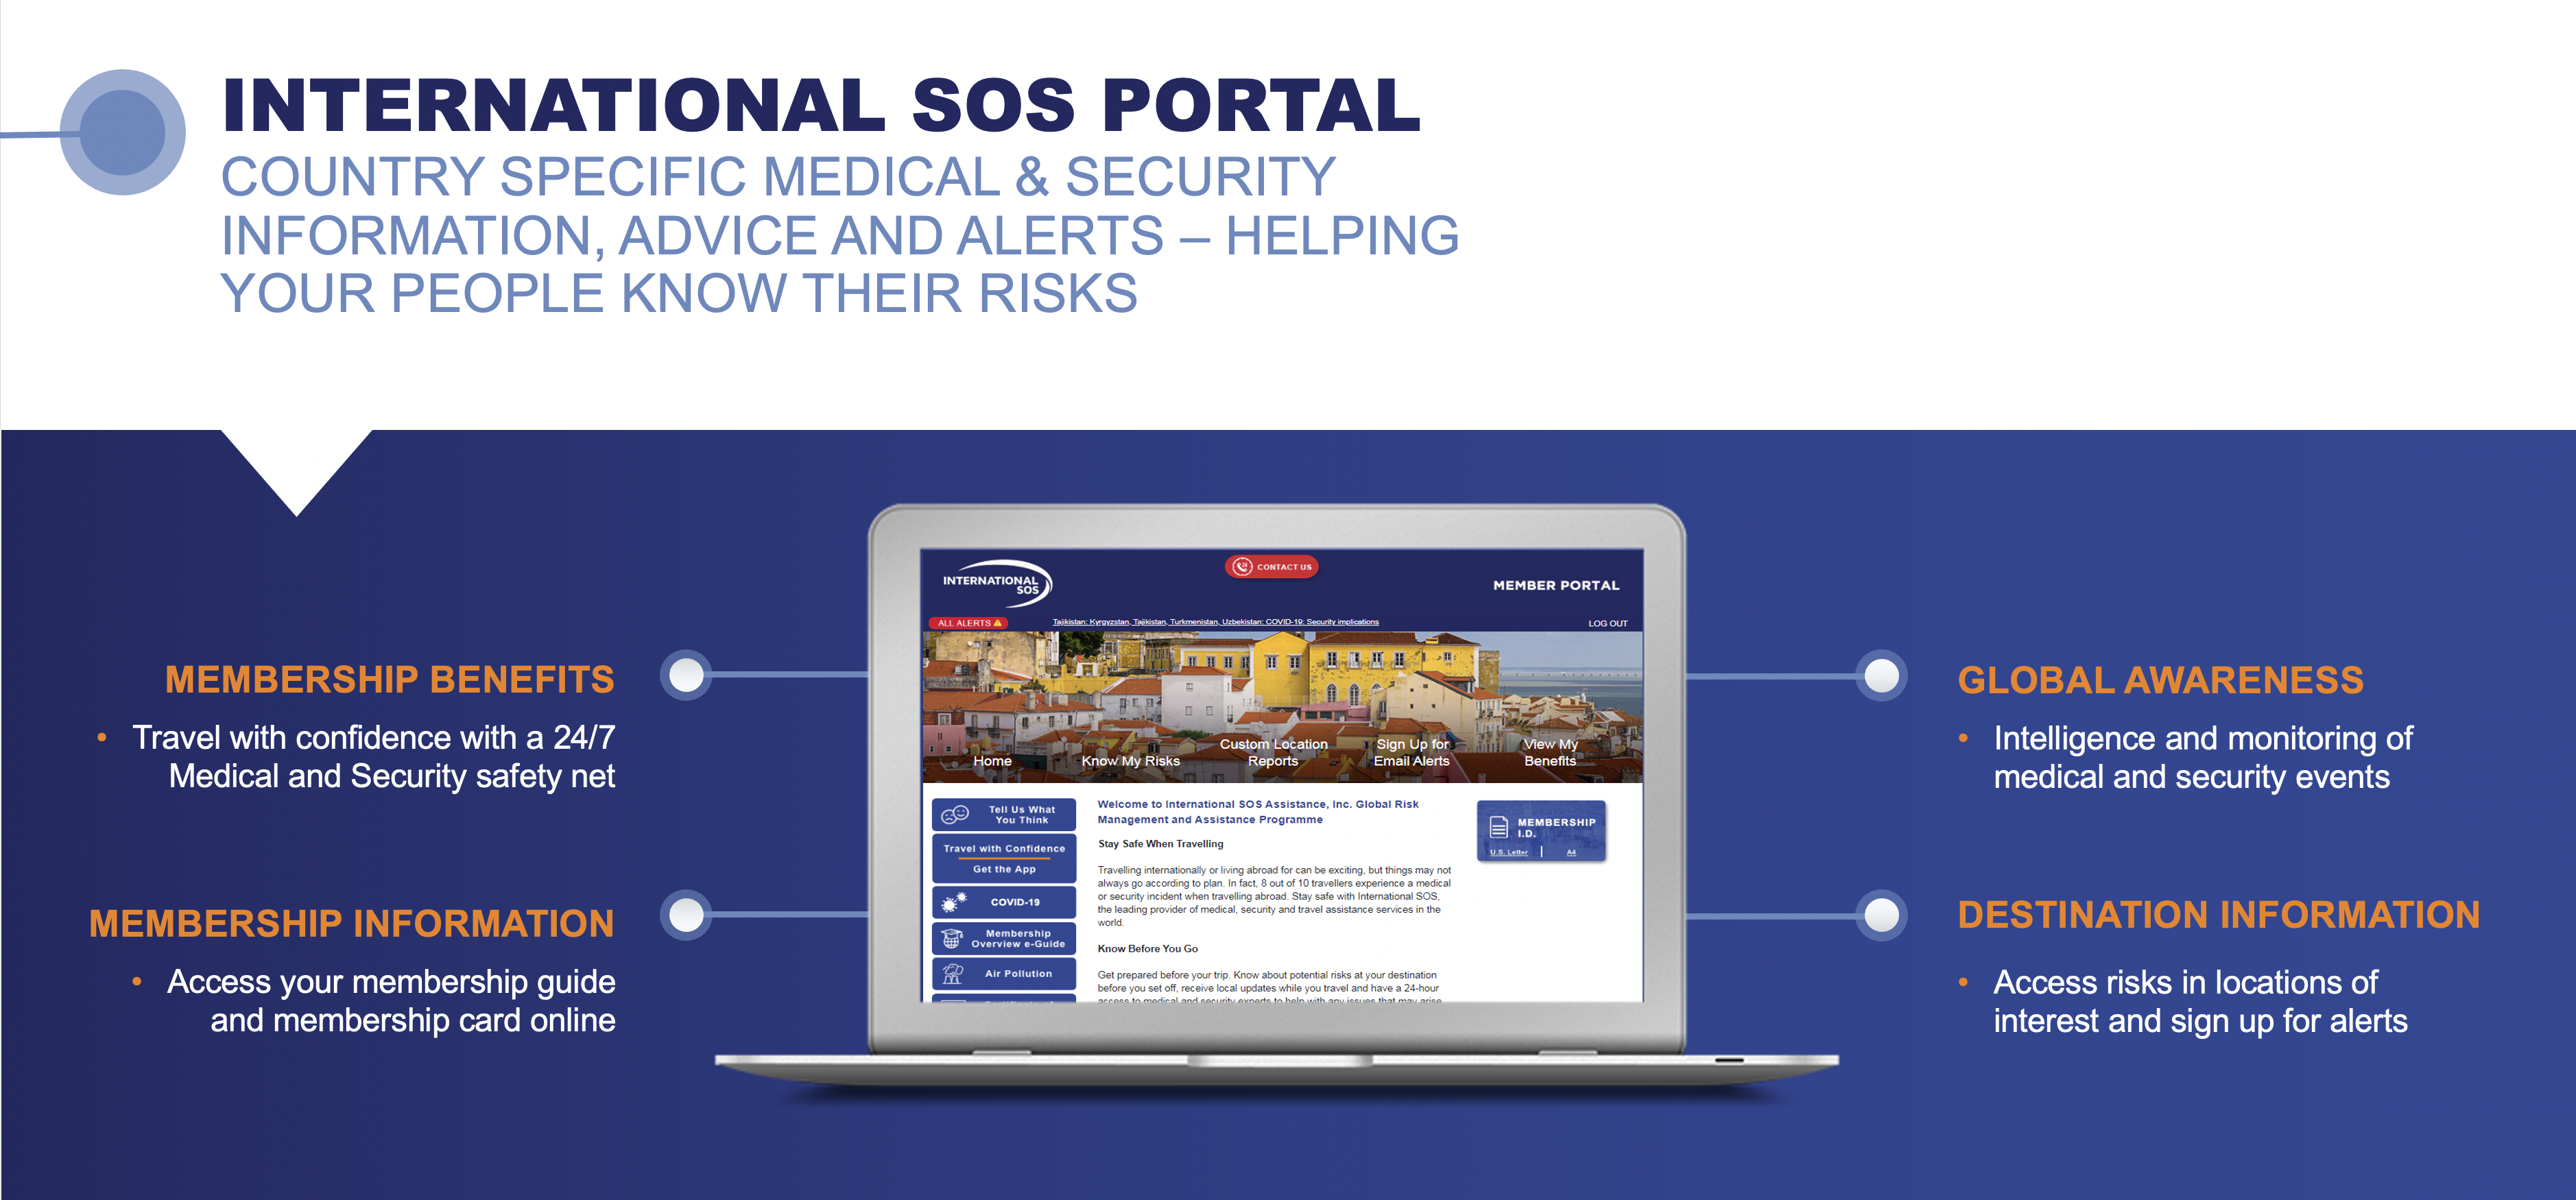 International SOS Portal